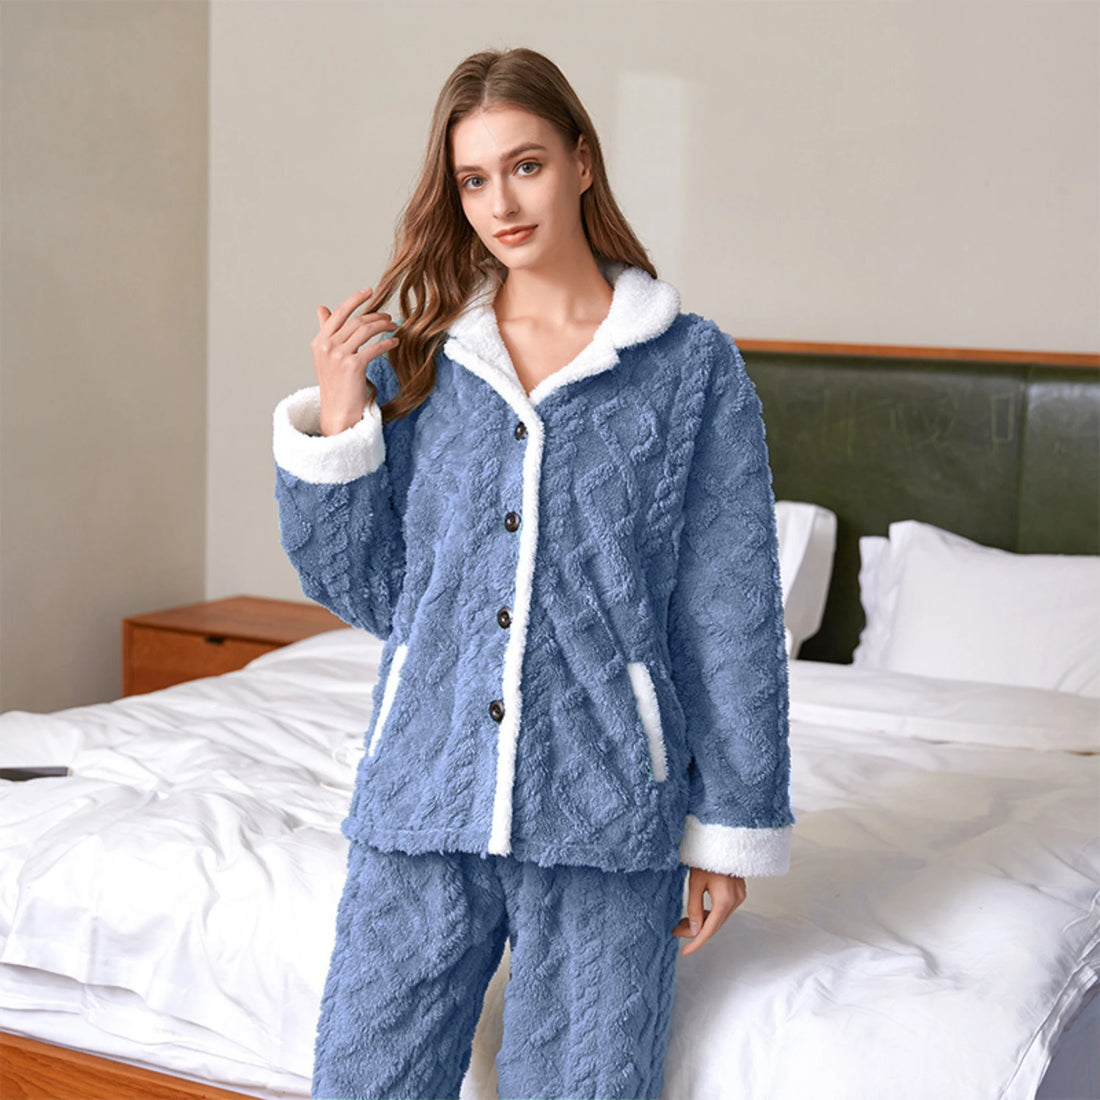 Pyjama Polaire Femme : 7 Tenues Douillettes Adorables ! – Les